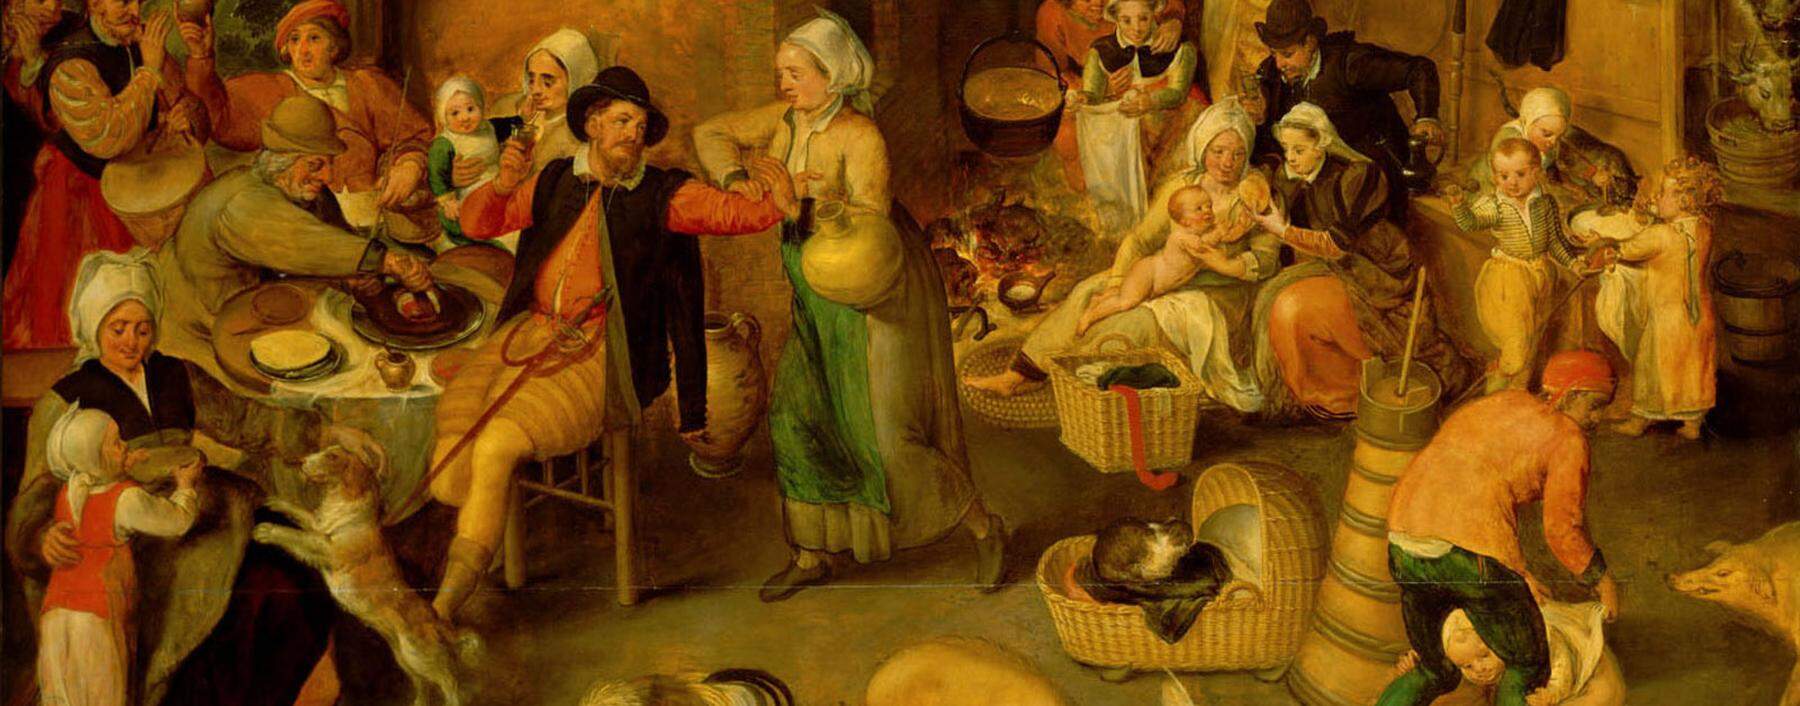 Alles auf engstem Raum: Der erweiterte Haushalt der vormodernen Zeit vereinte alle Lebensbereiche (flämisches Gemälde, 16. Jahrhundert).